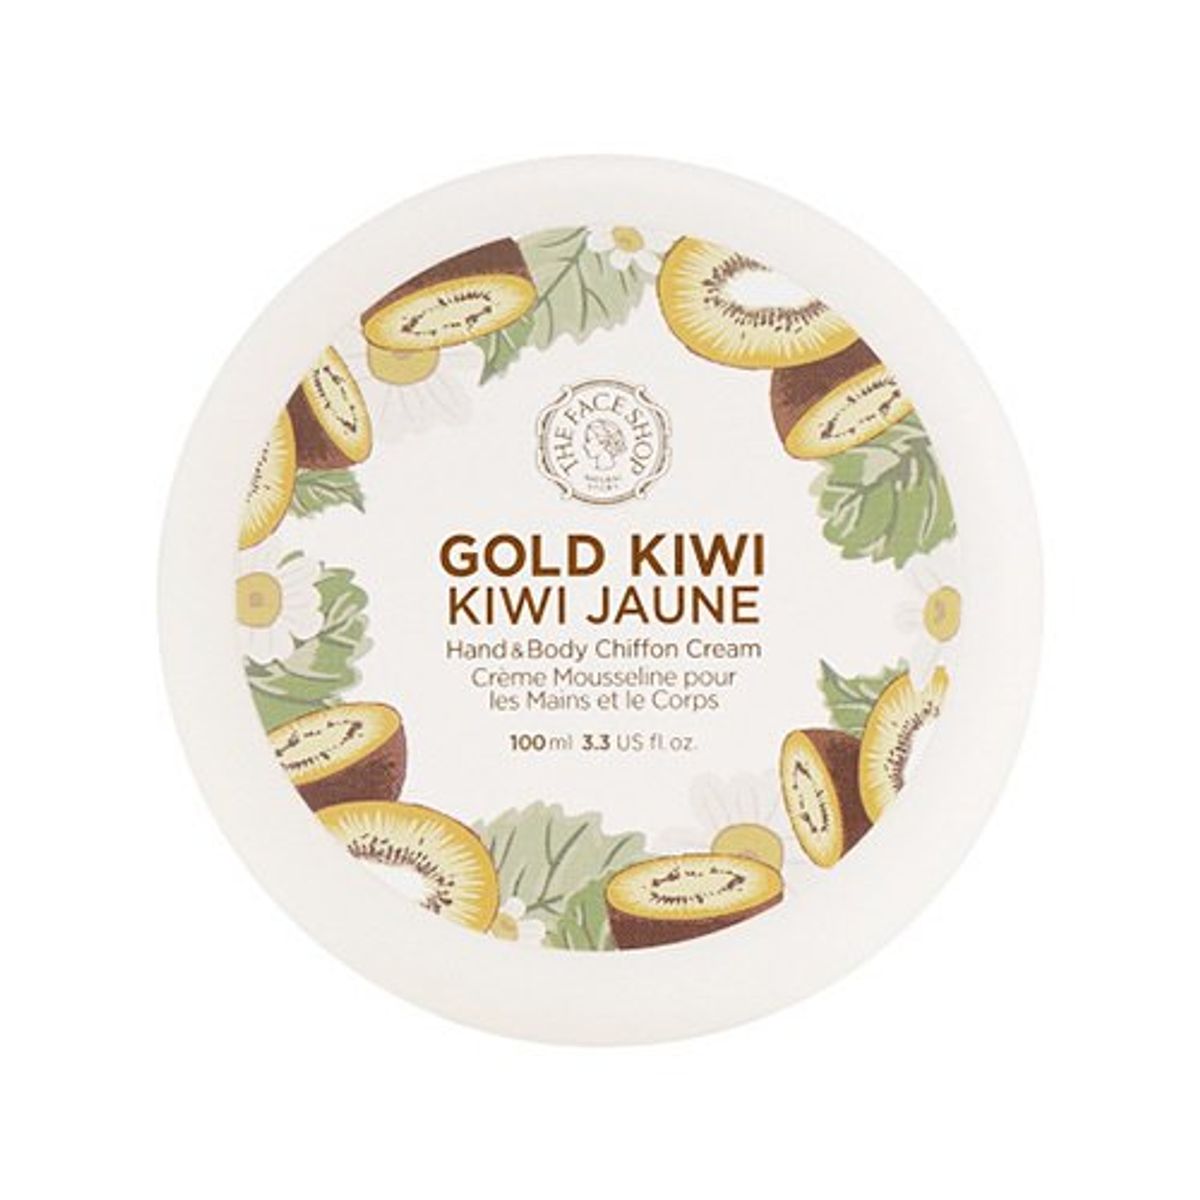 kem-duong-tay-va-co-the-gold-kiwi-hand-body-chiffon-cream-1